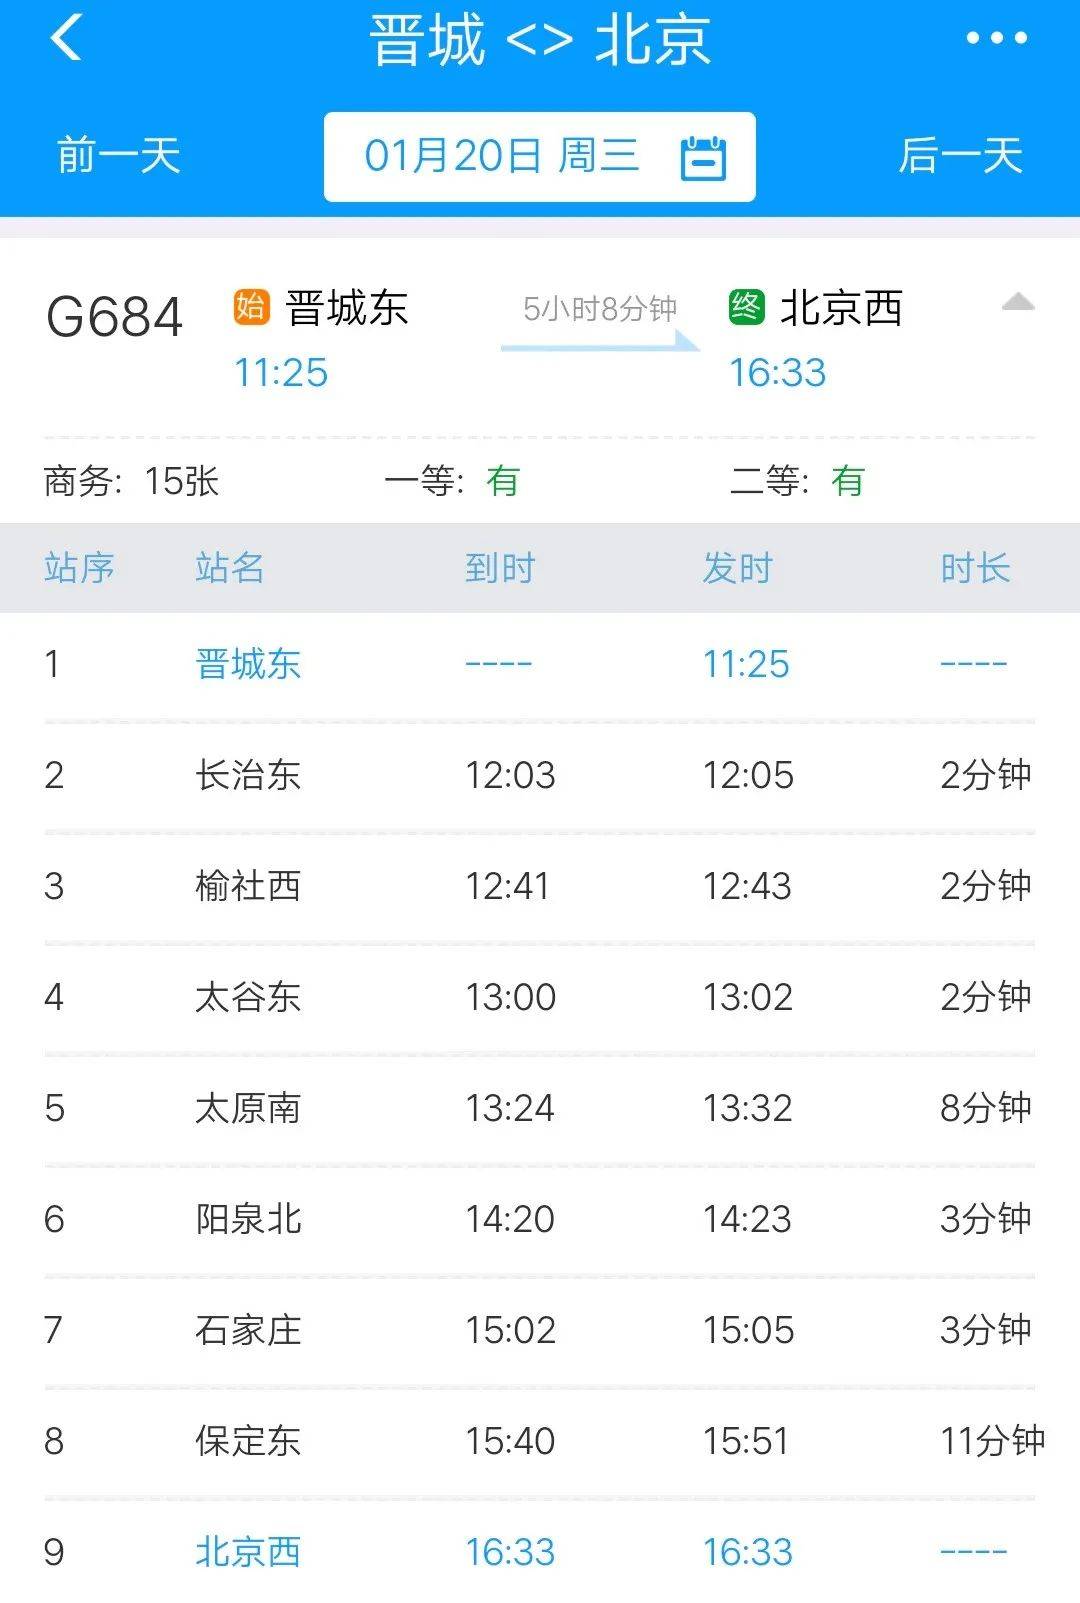 
【头条】晋城⇋北京高铁票开售! 另有...‘太阳成集团tyc234cc’(图1)